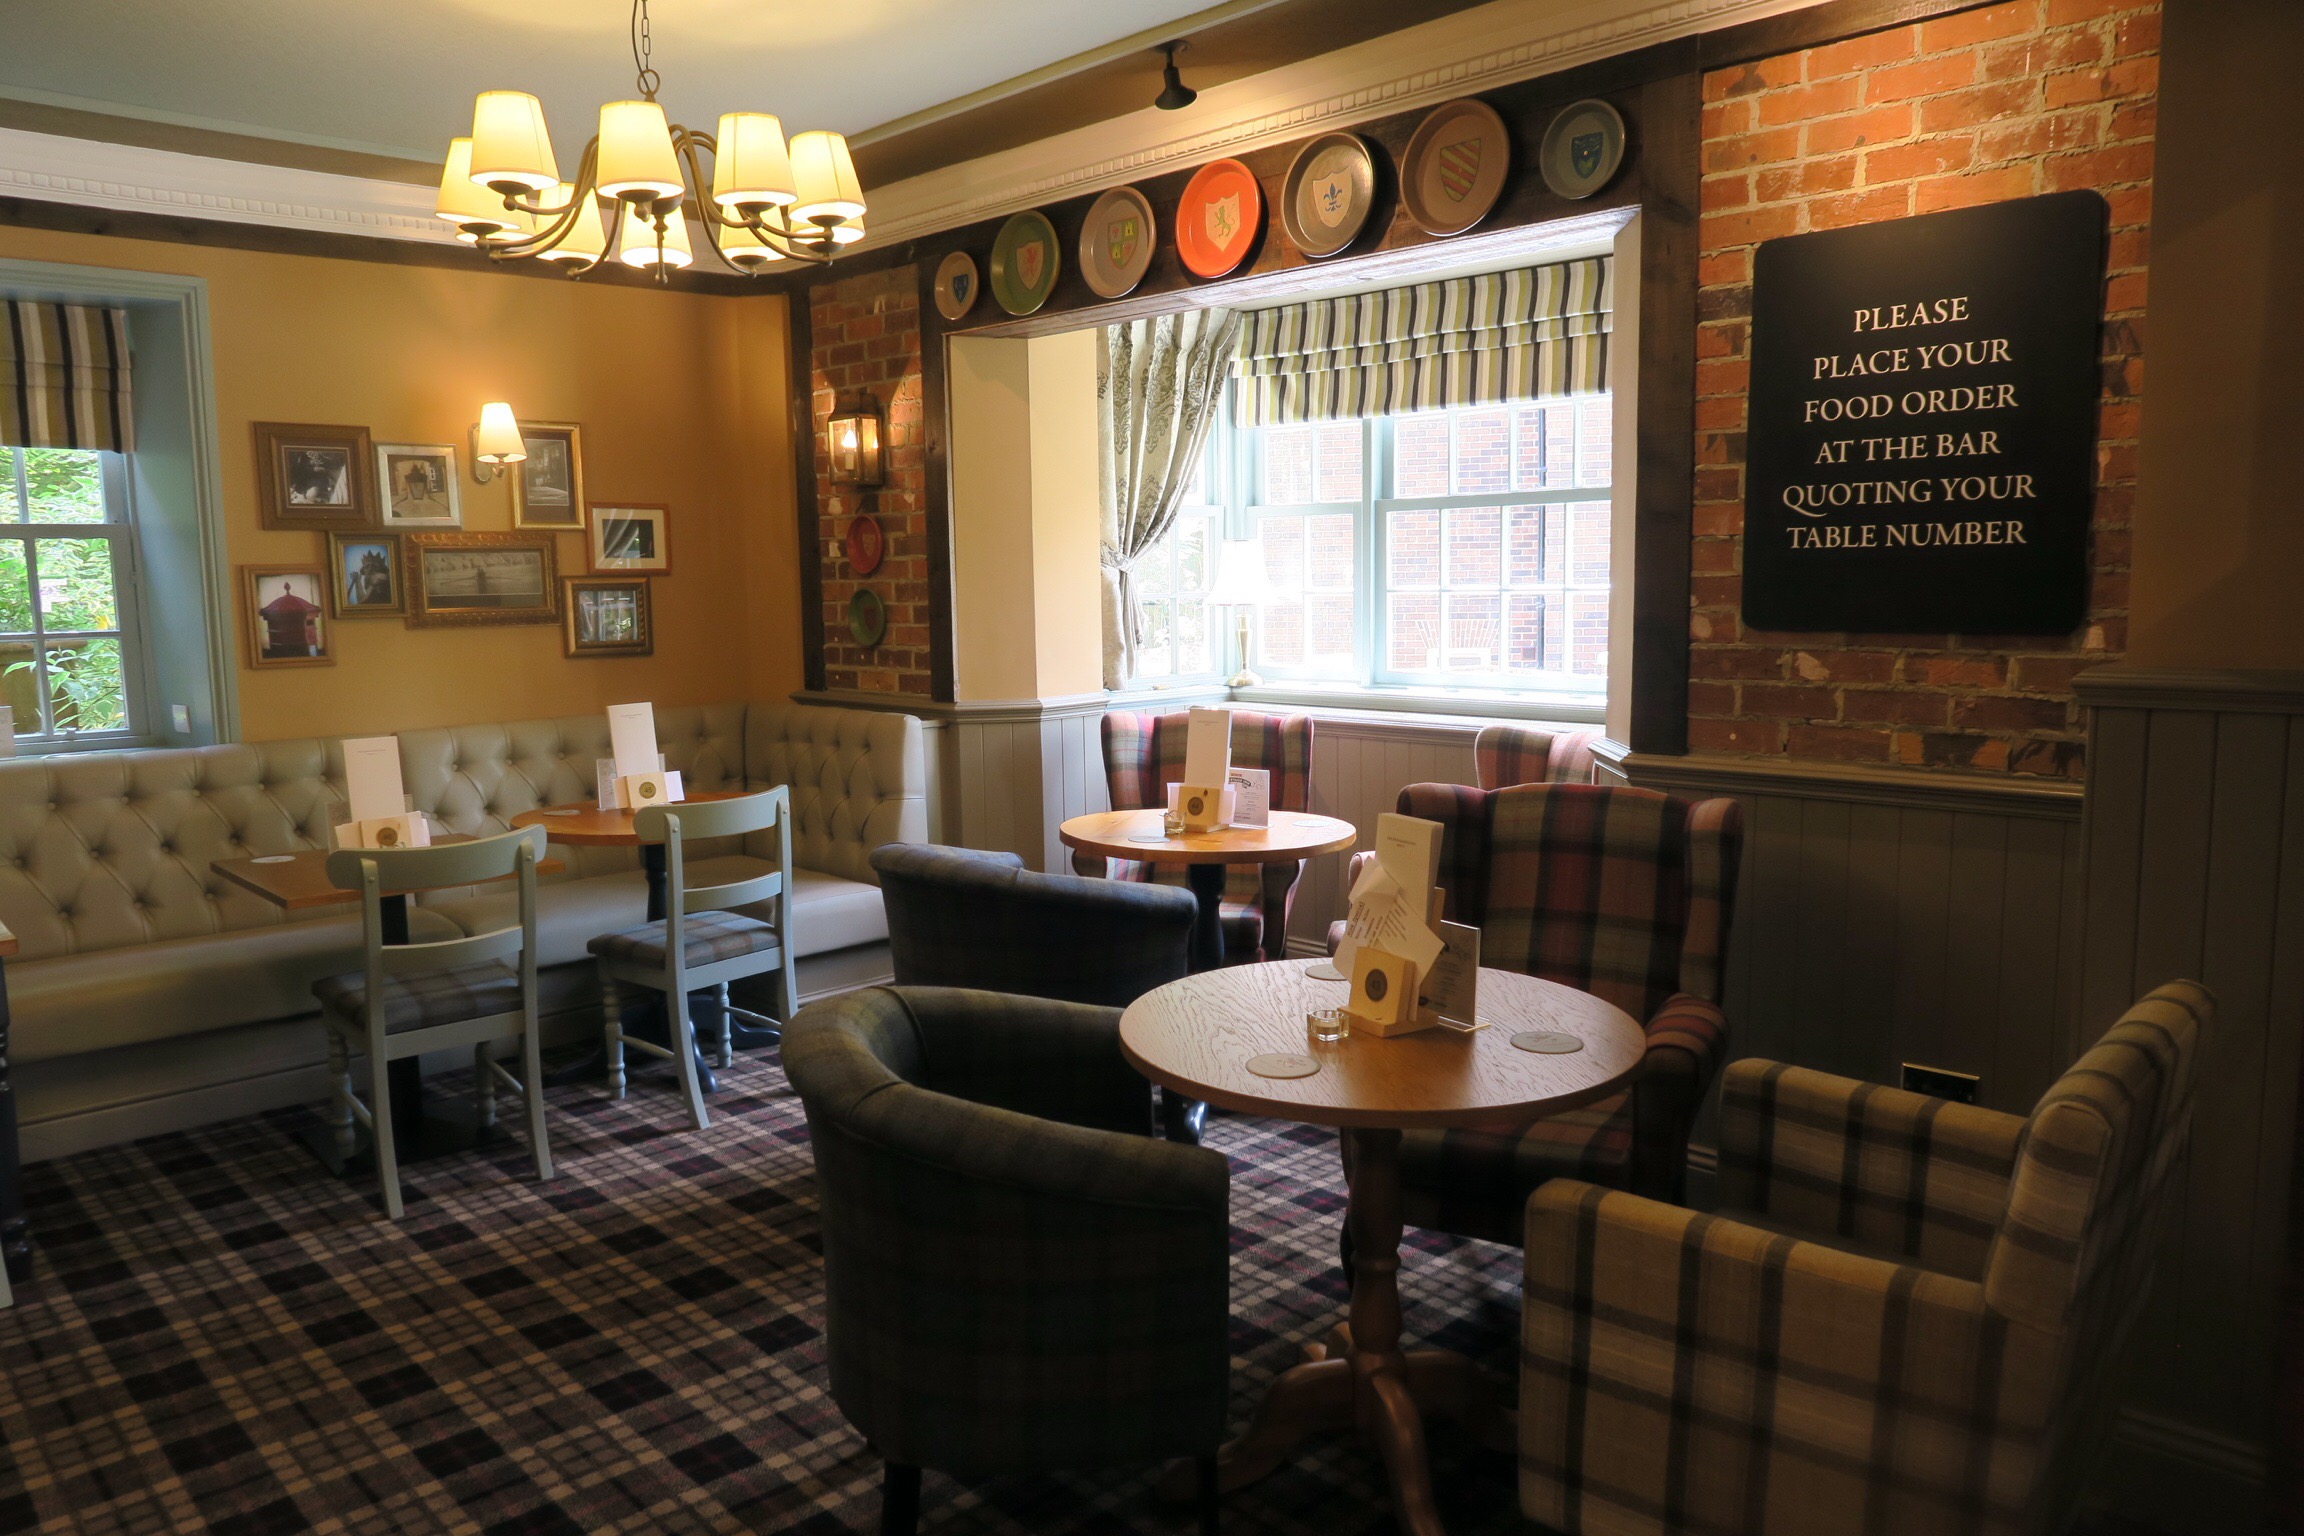 Restaurant Review - Kingslodge Inn, Durham